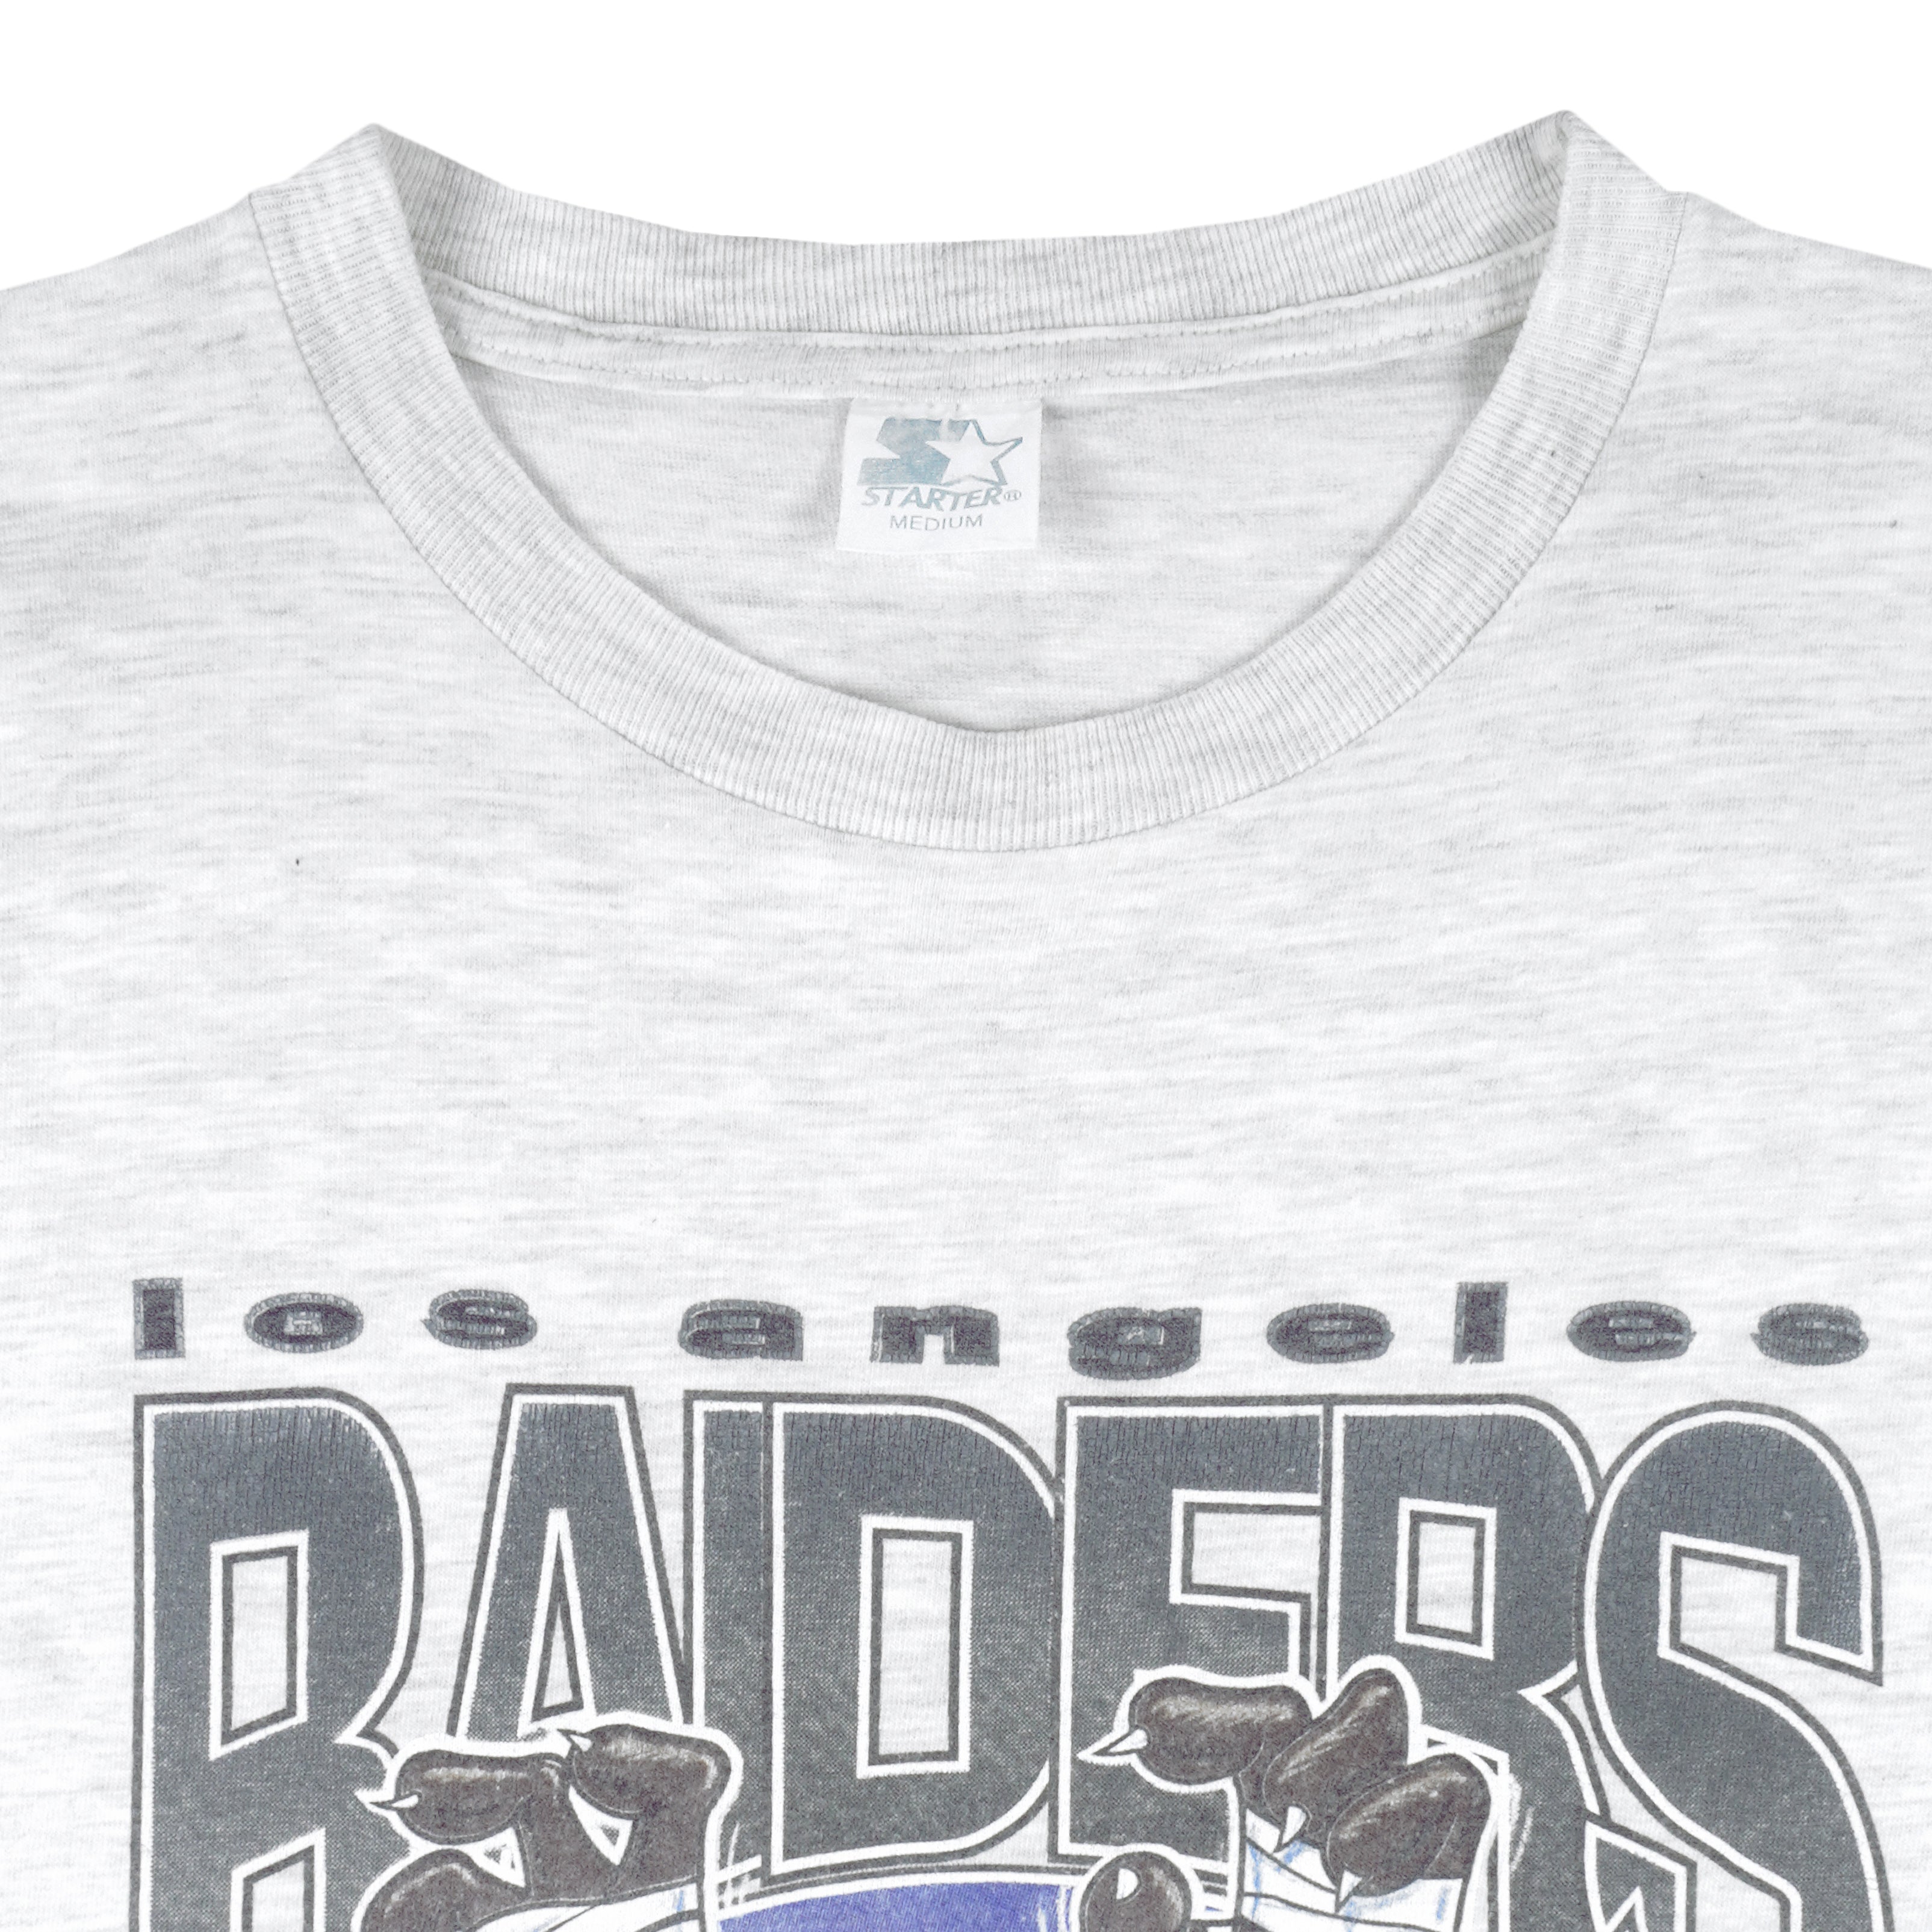 Vintage NFL Los Angeles Raiders Tee Shirt 1990s Medium Made USA